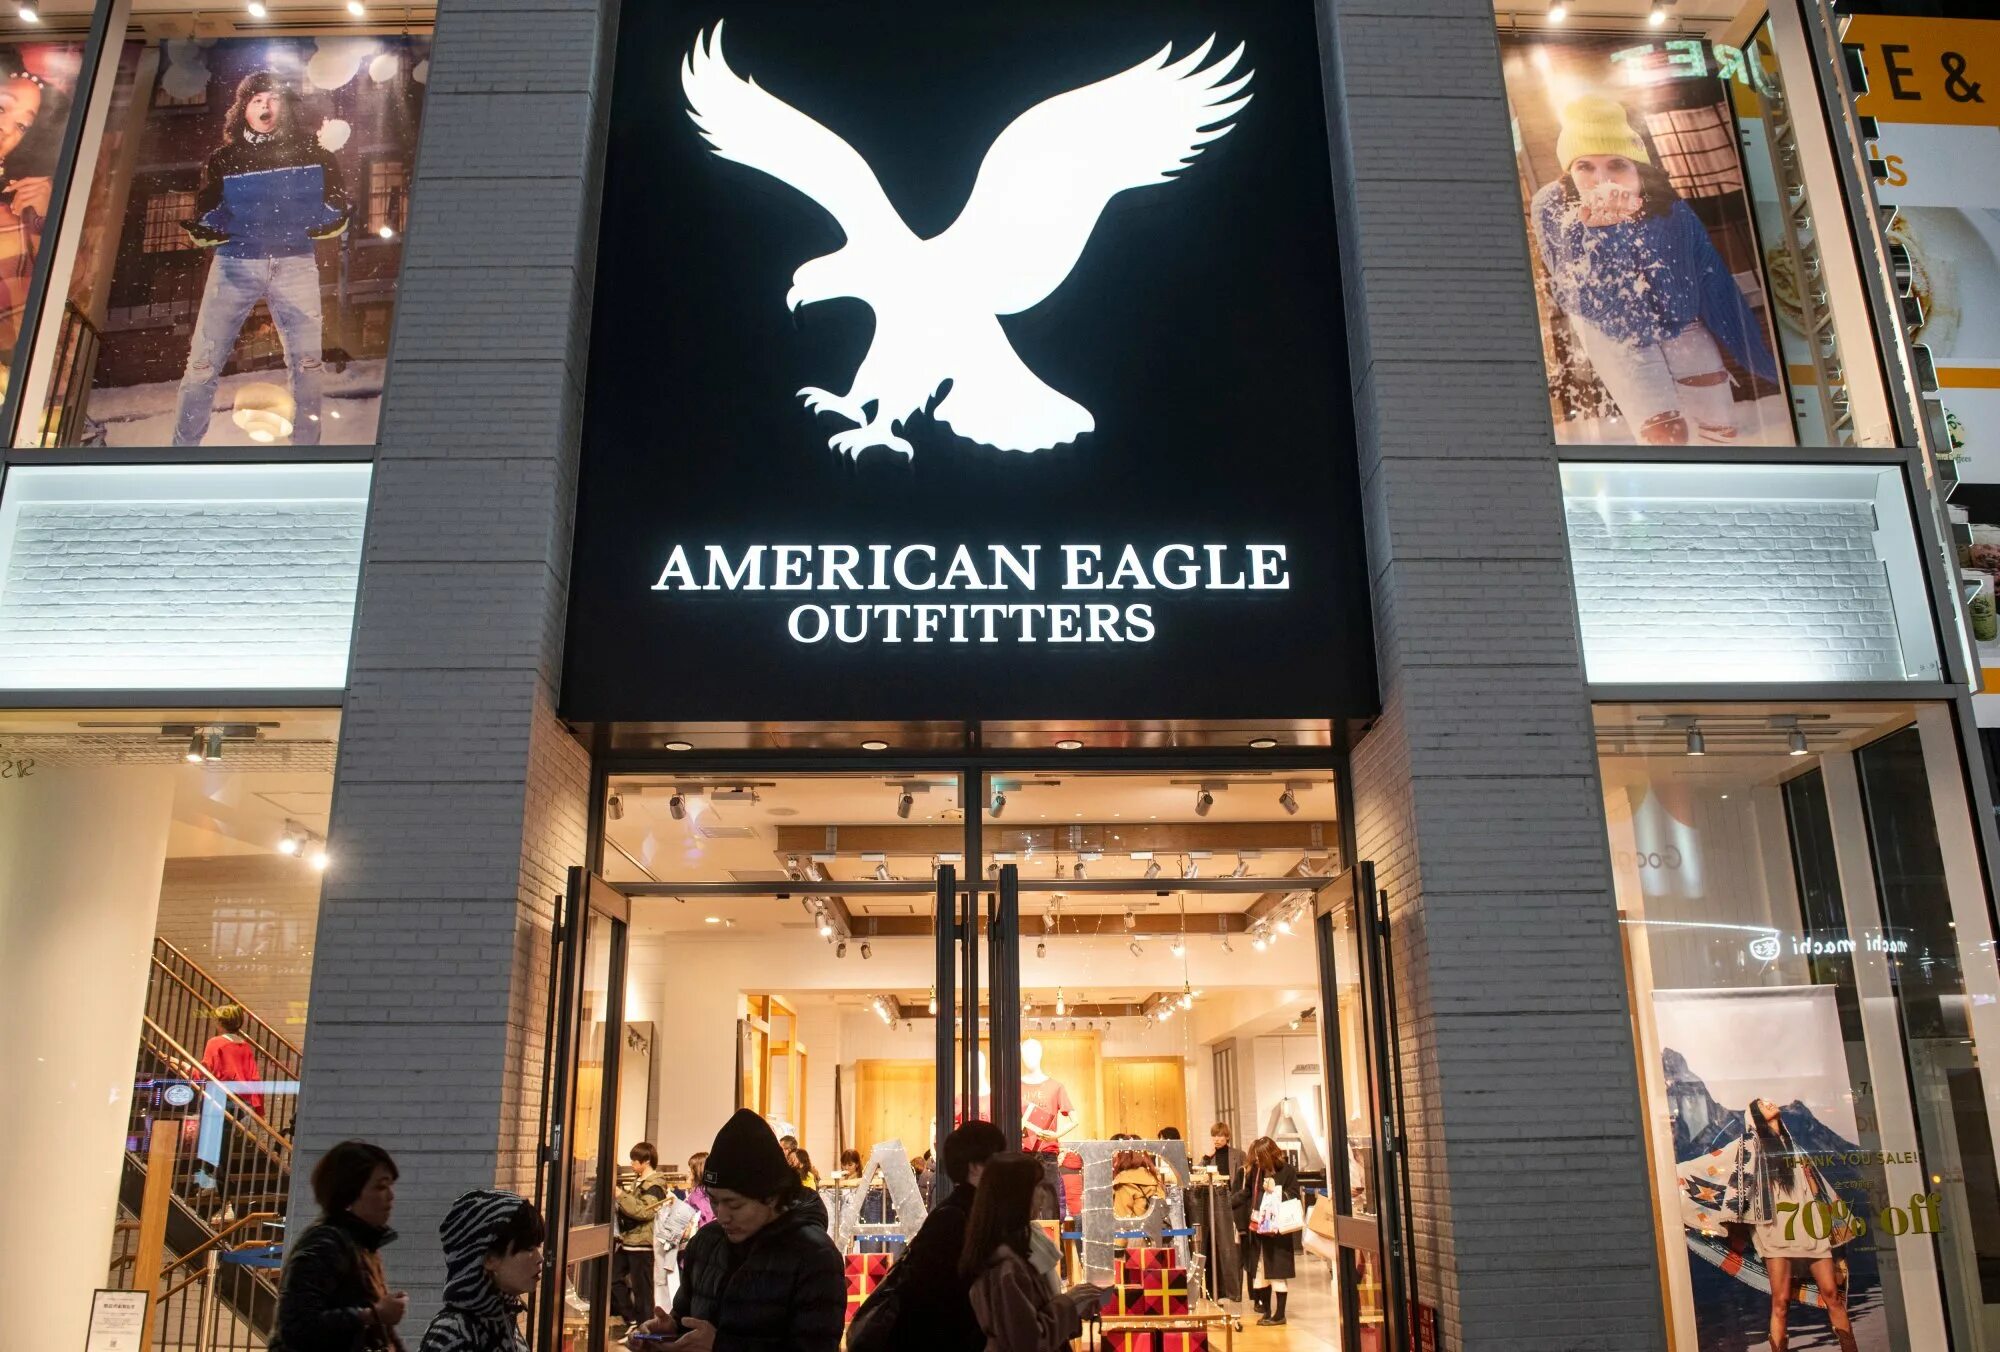 Американ игл. American Eagle бренд. American Eagle одежда. American Eagle Outfitters. Американский бренд одежды с орлом.